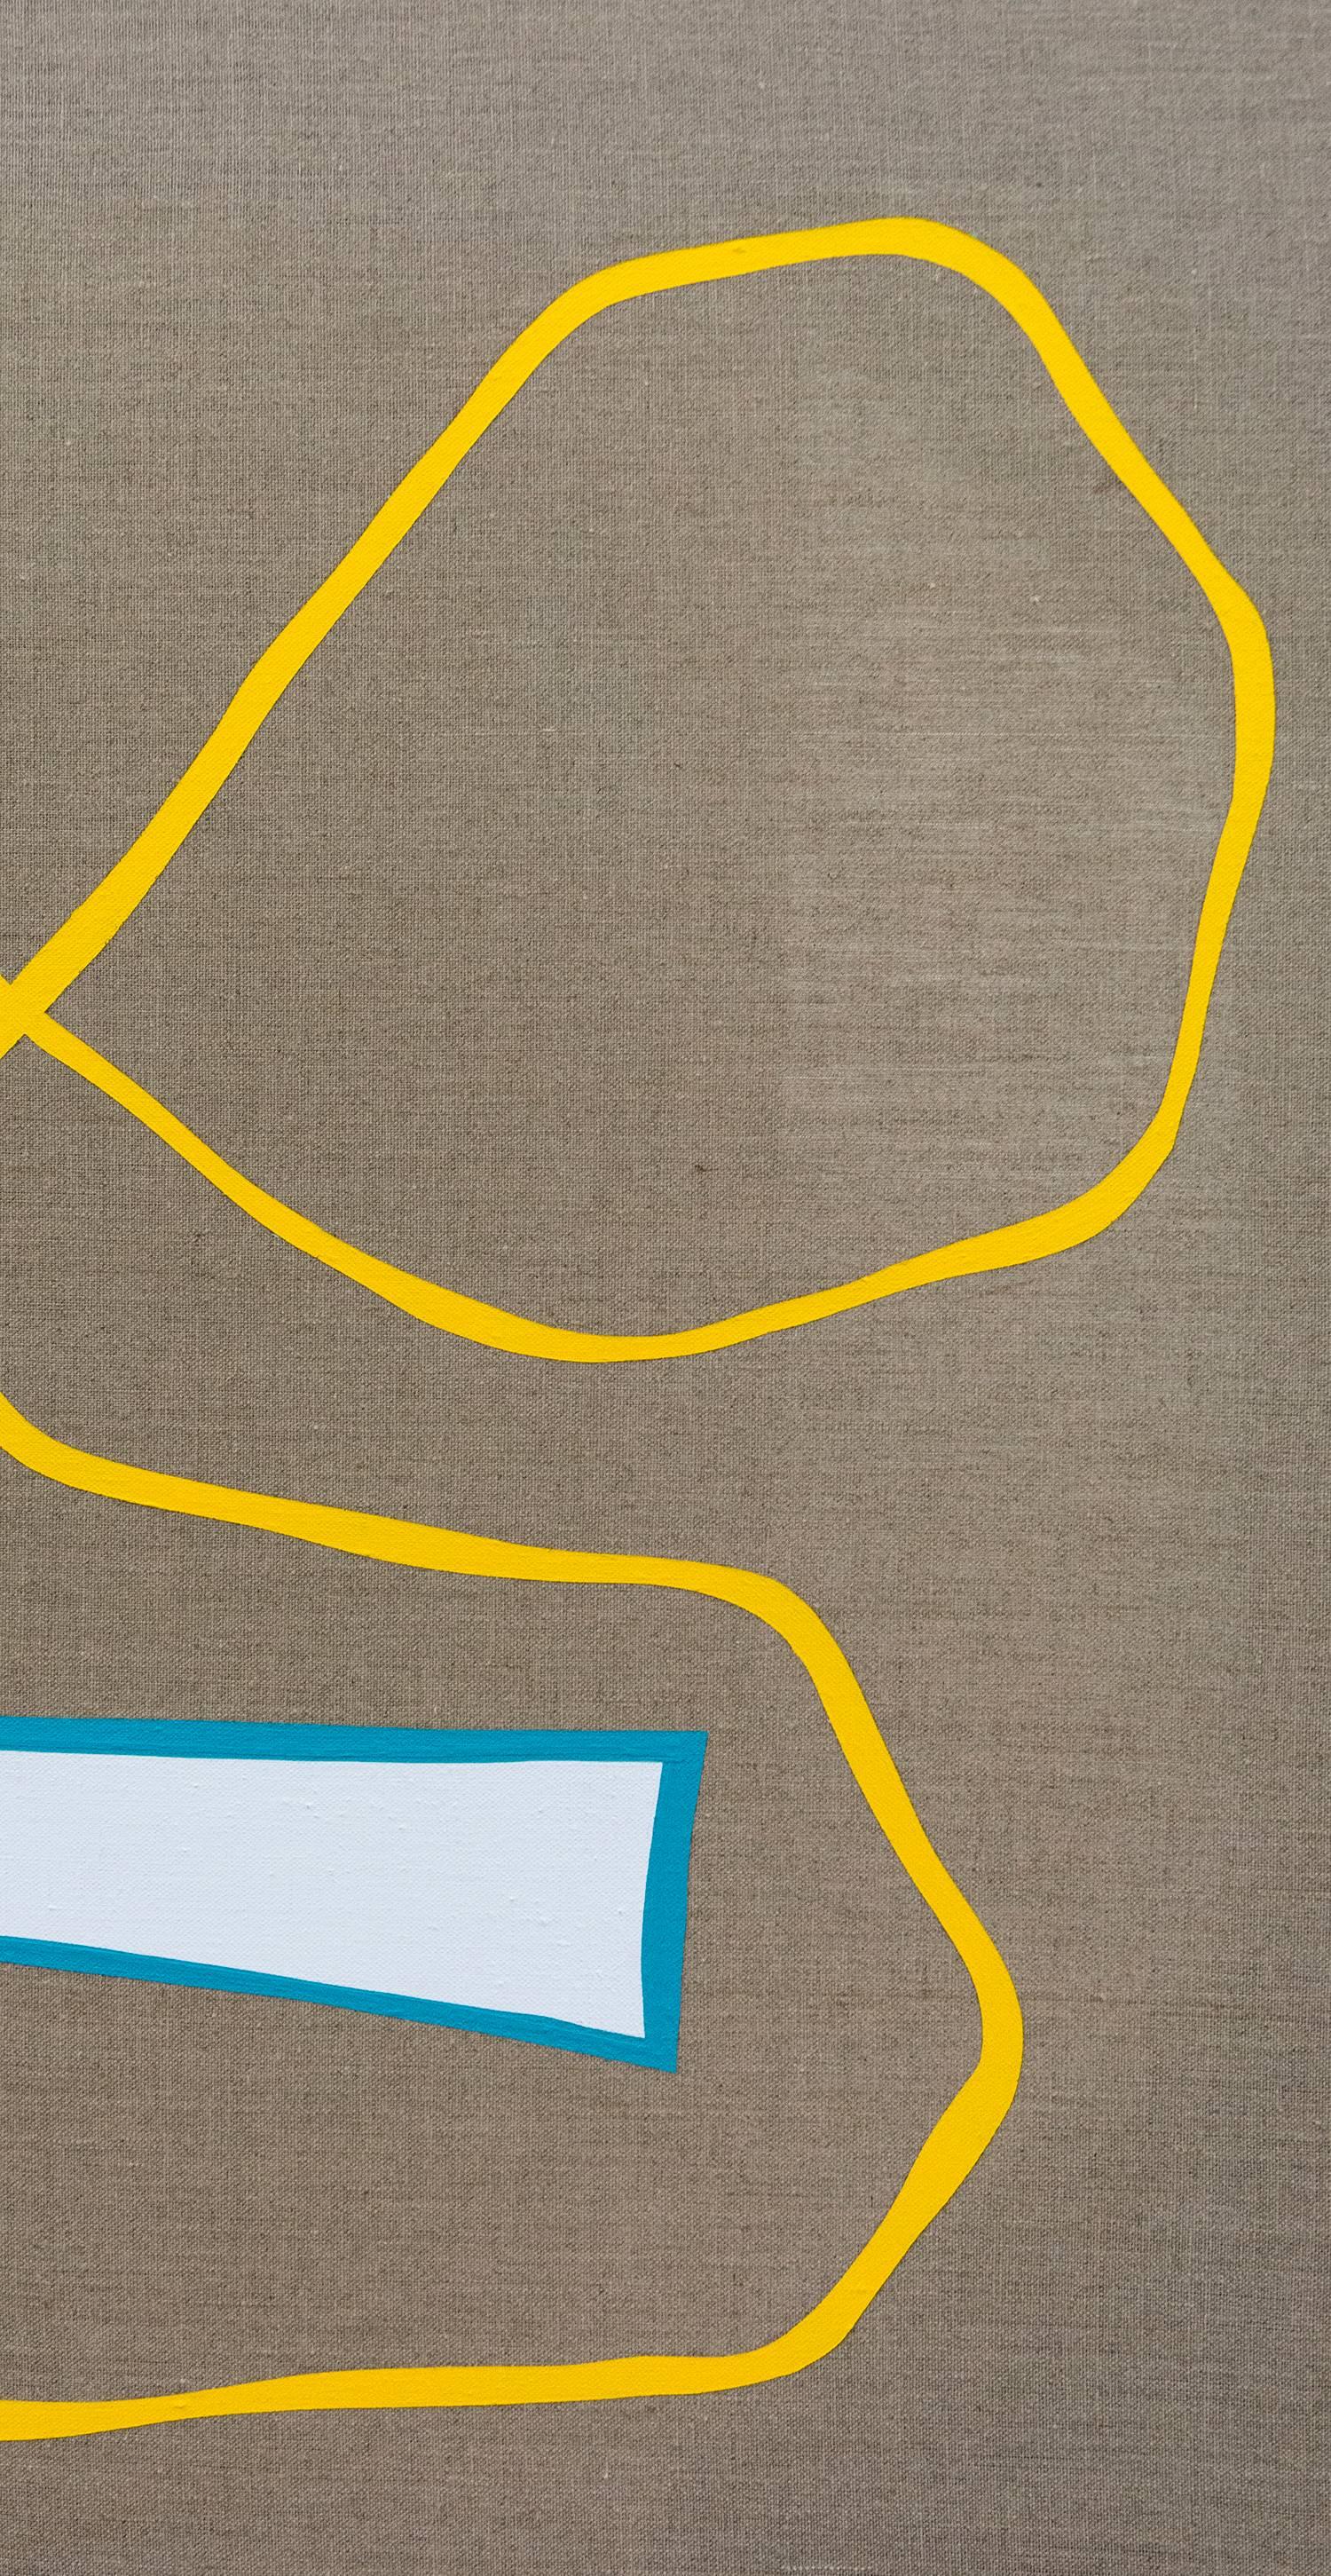 Split Green Shape mit langer gelber Linie - farbenfrohe, abstrakte Formen auf Leinwand – Painting von Aron Hill